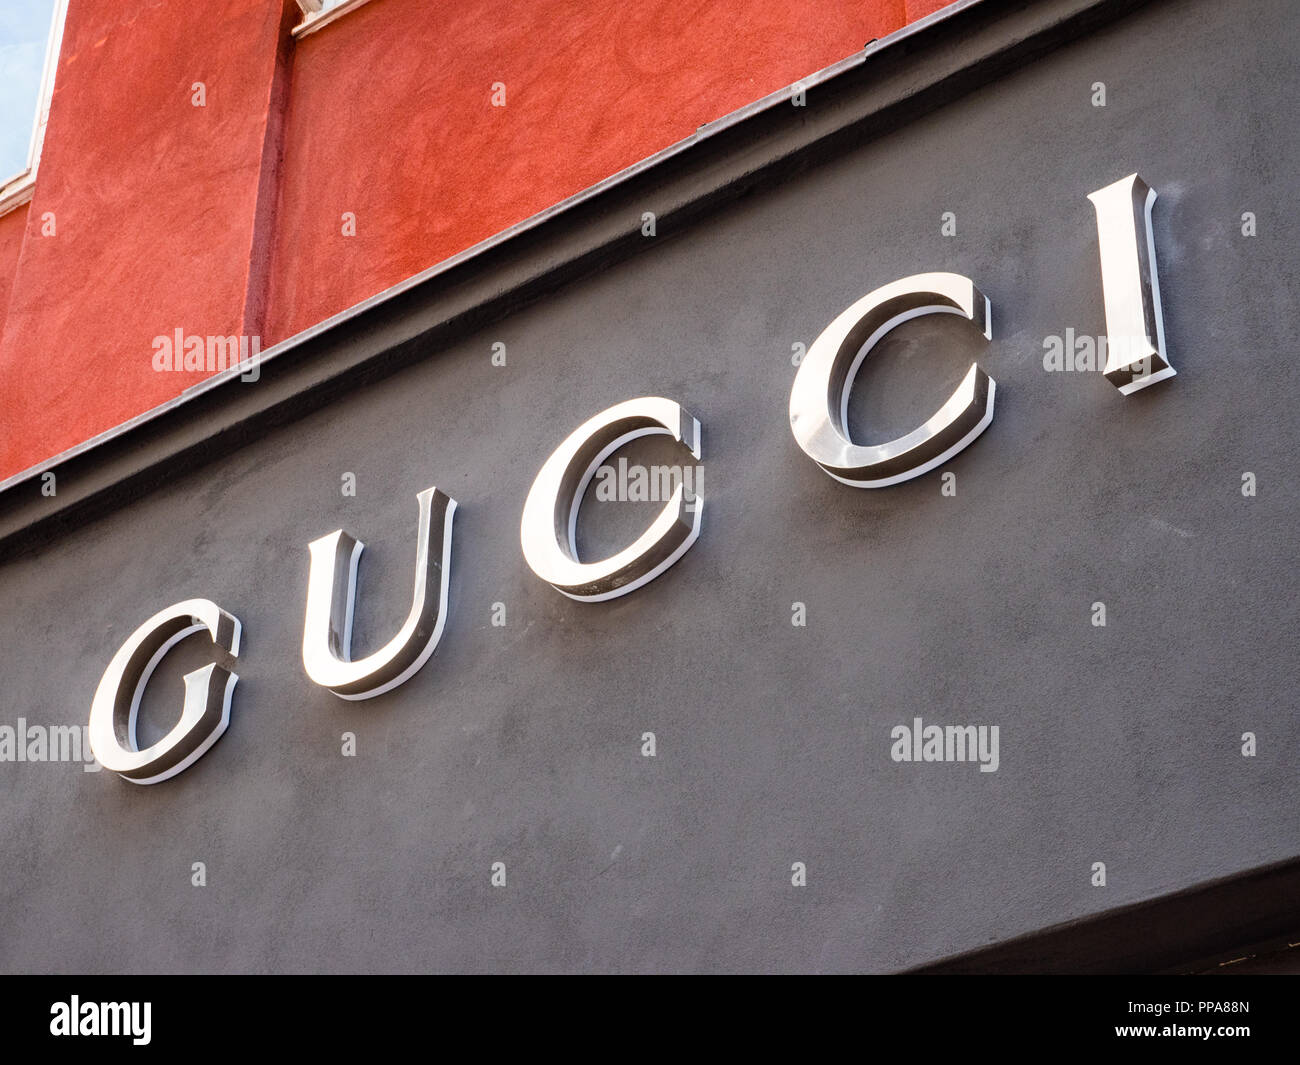 Gucci Store, Copenhagen, Zealand, Denmark, Europe Stock Photo - Alamy